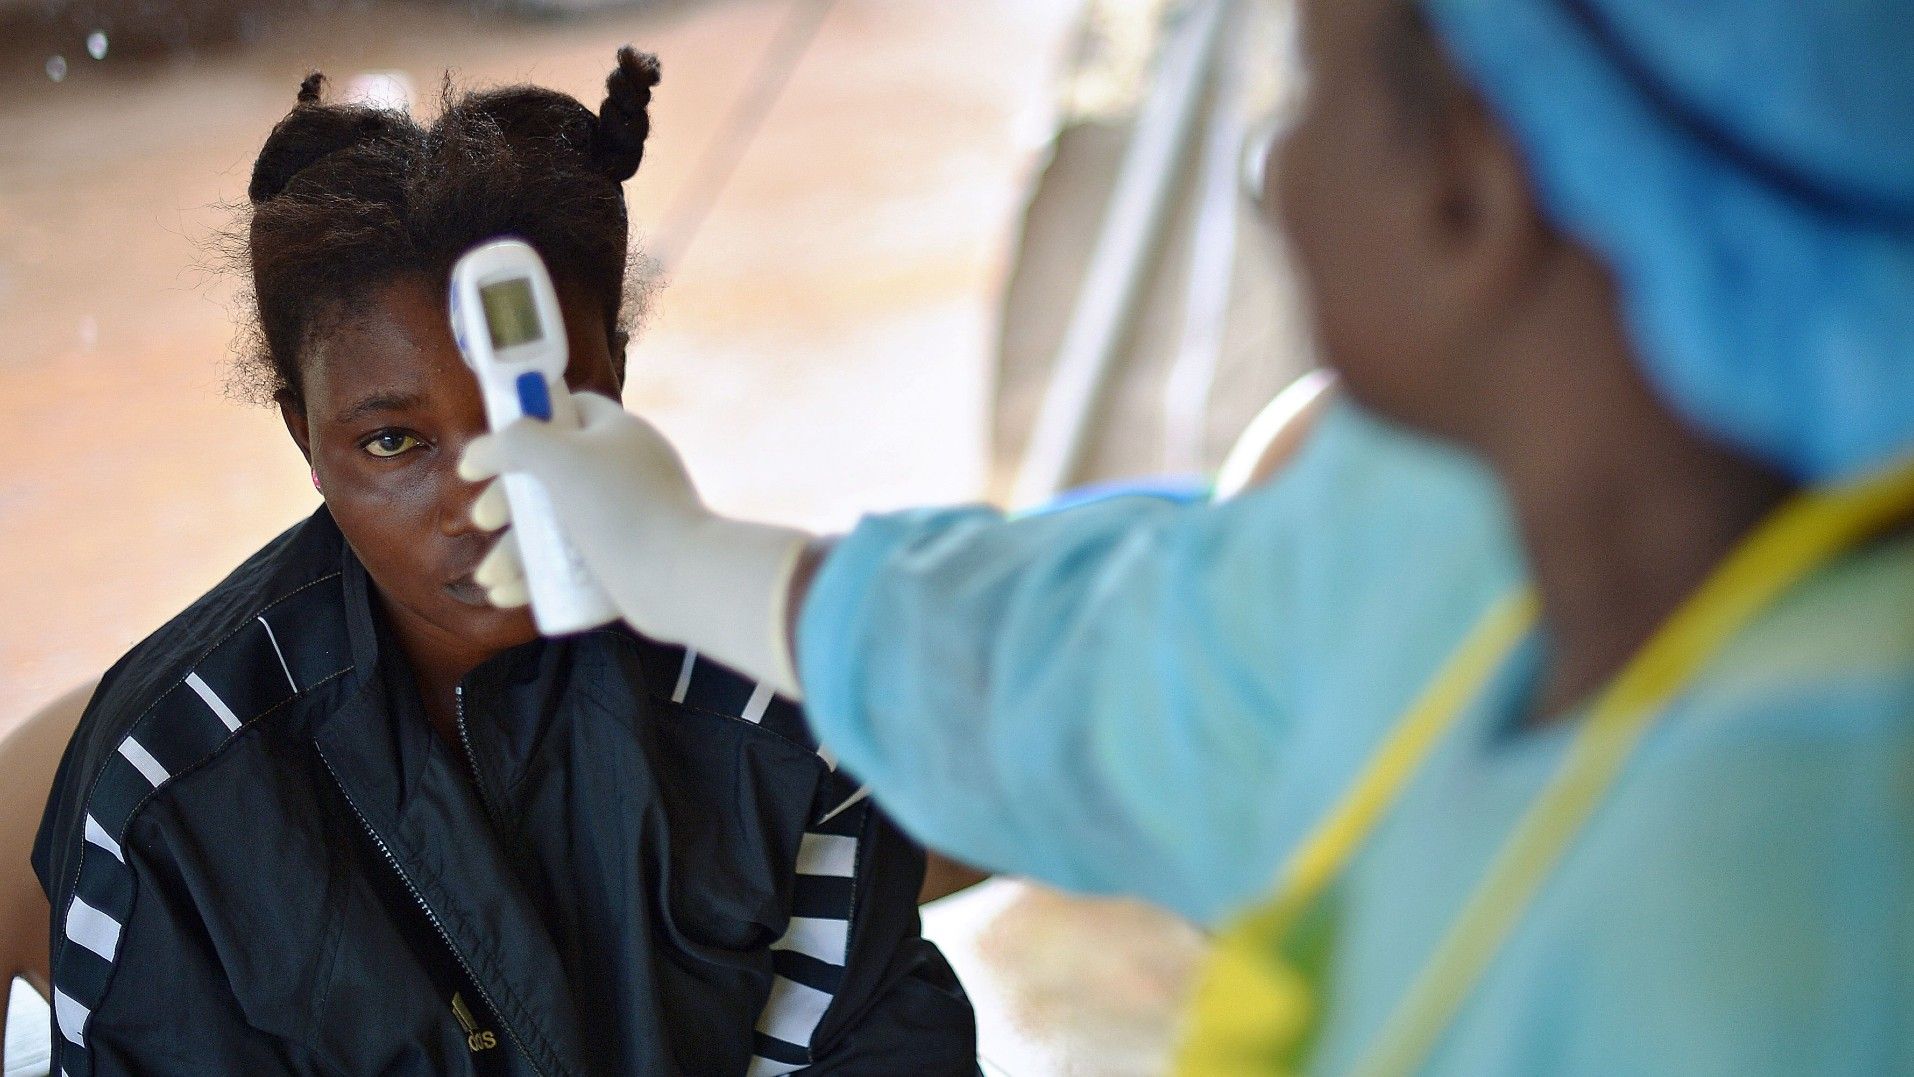 Foto de archivo de una joven a la que le toman la temperatura porque se sospecha que tiene ébola, en agosto de 2014